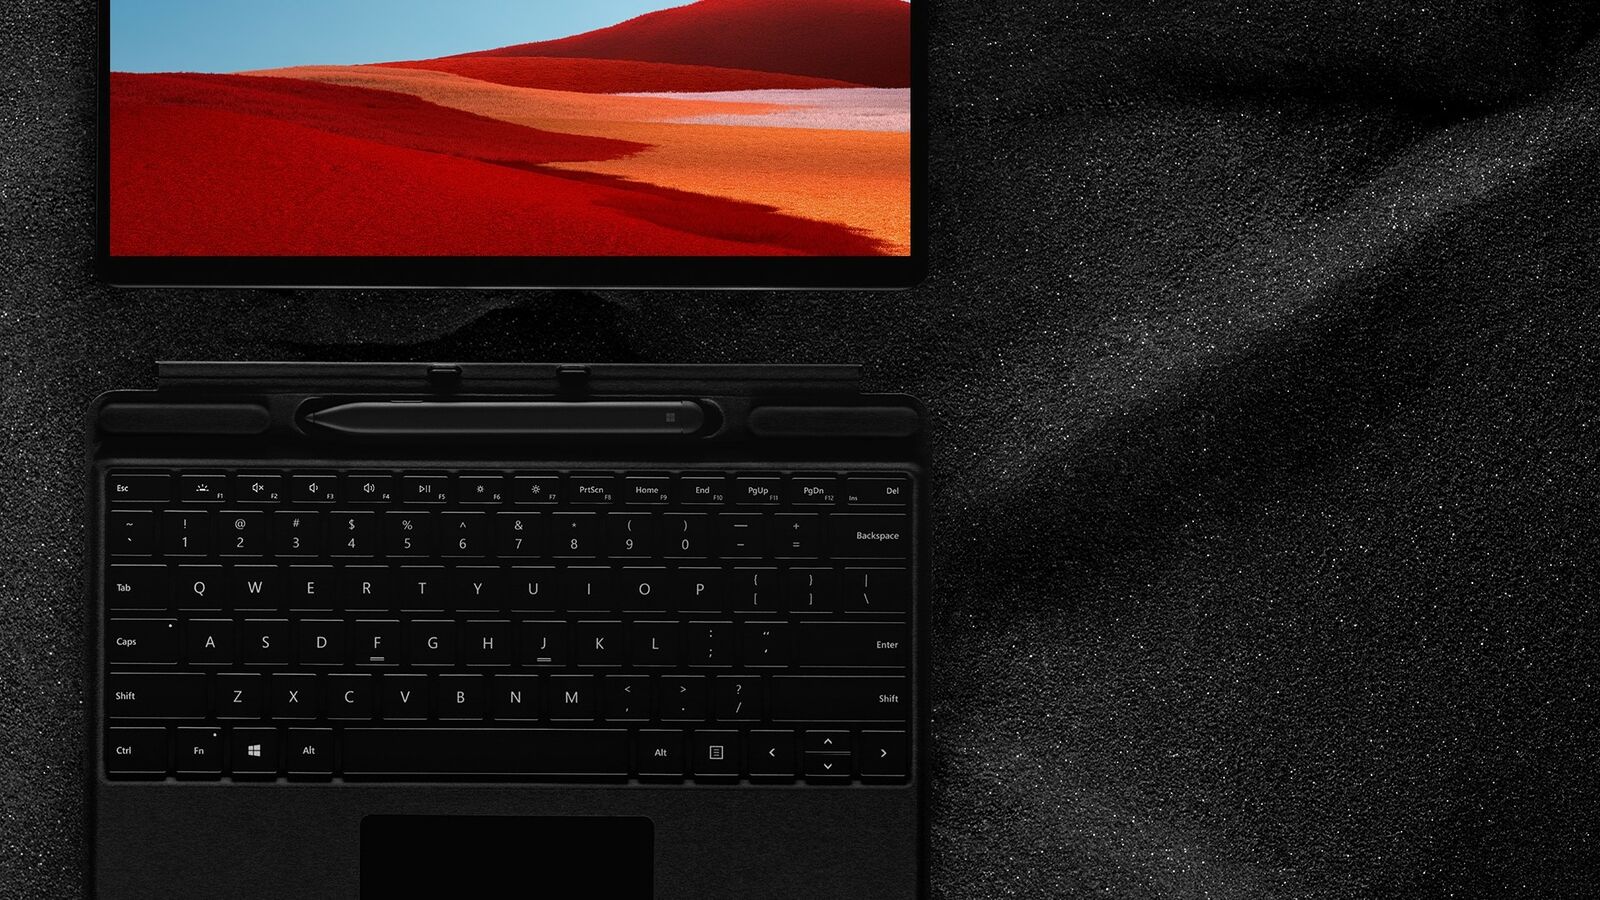 Microsoft Surface Pro X SQ1 8GB RAM 128GB SSD, LTE, Black